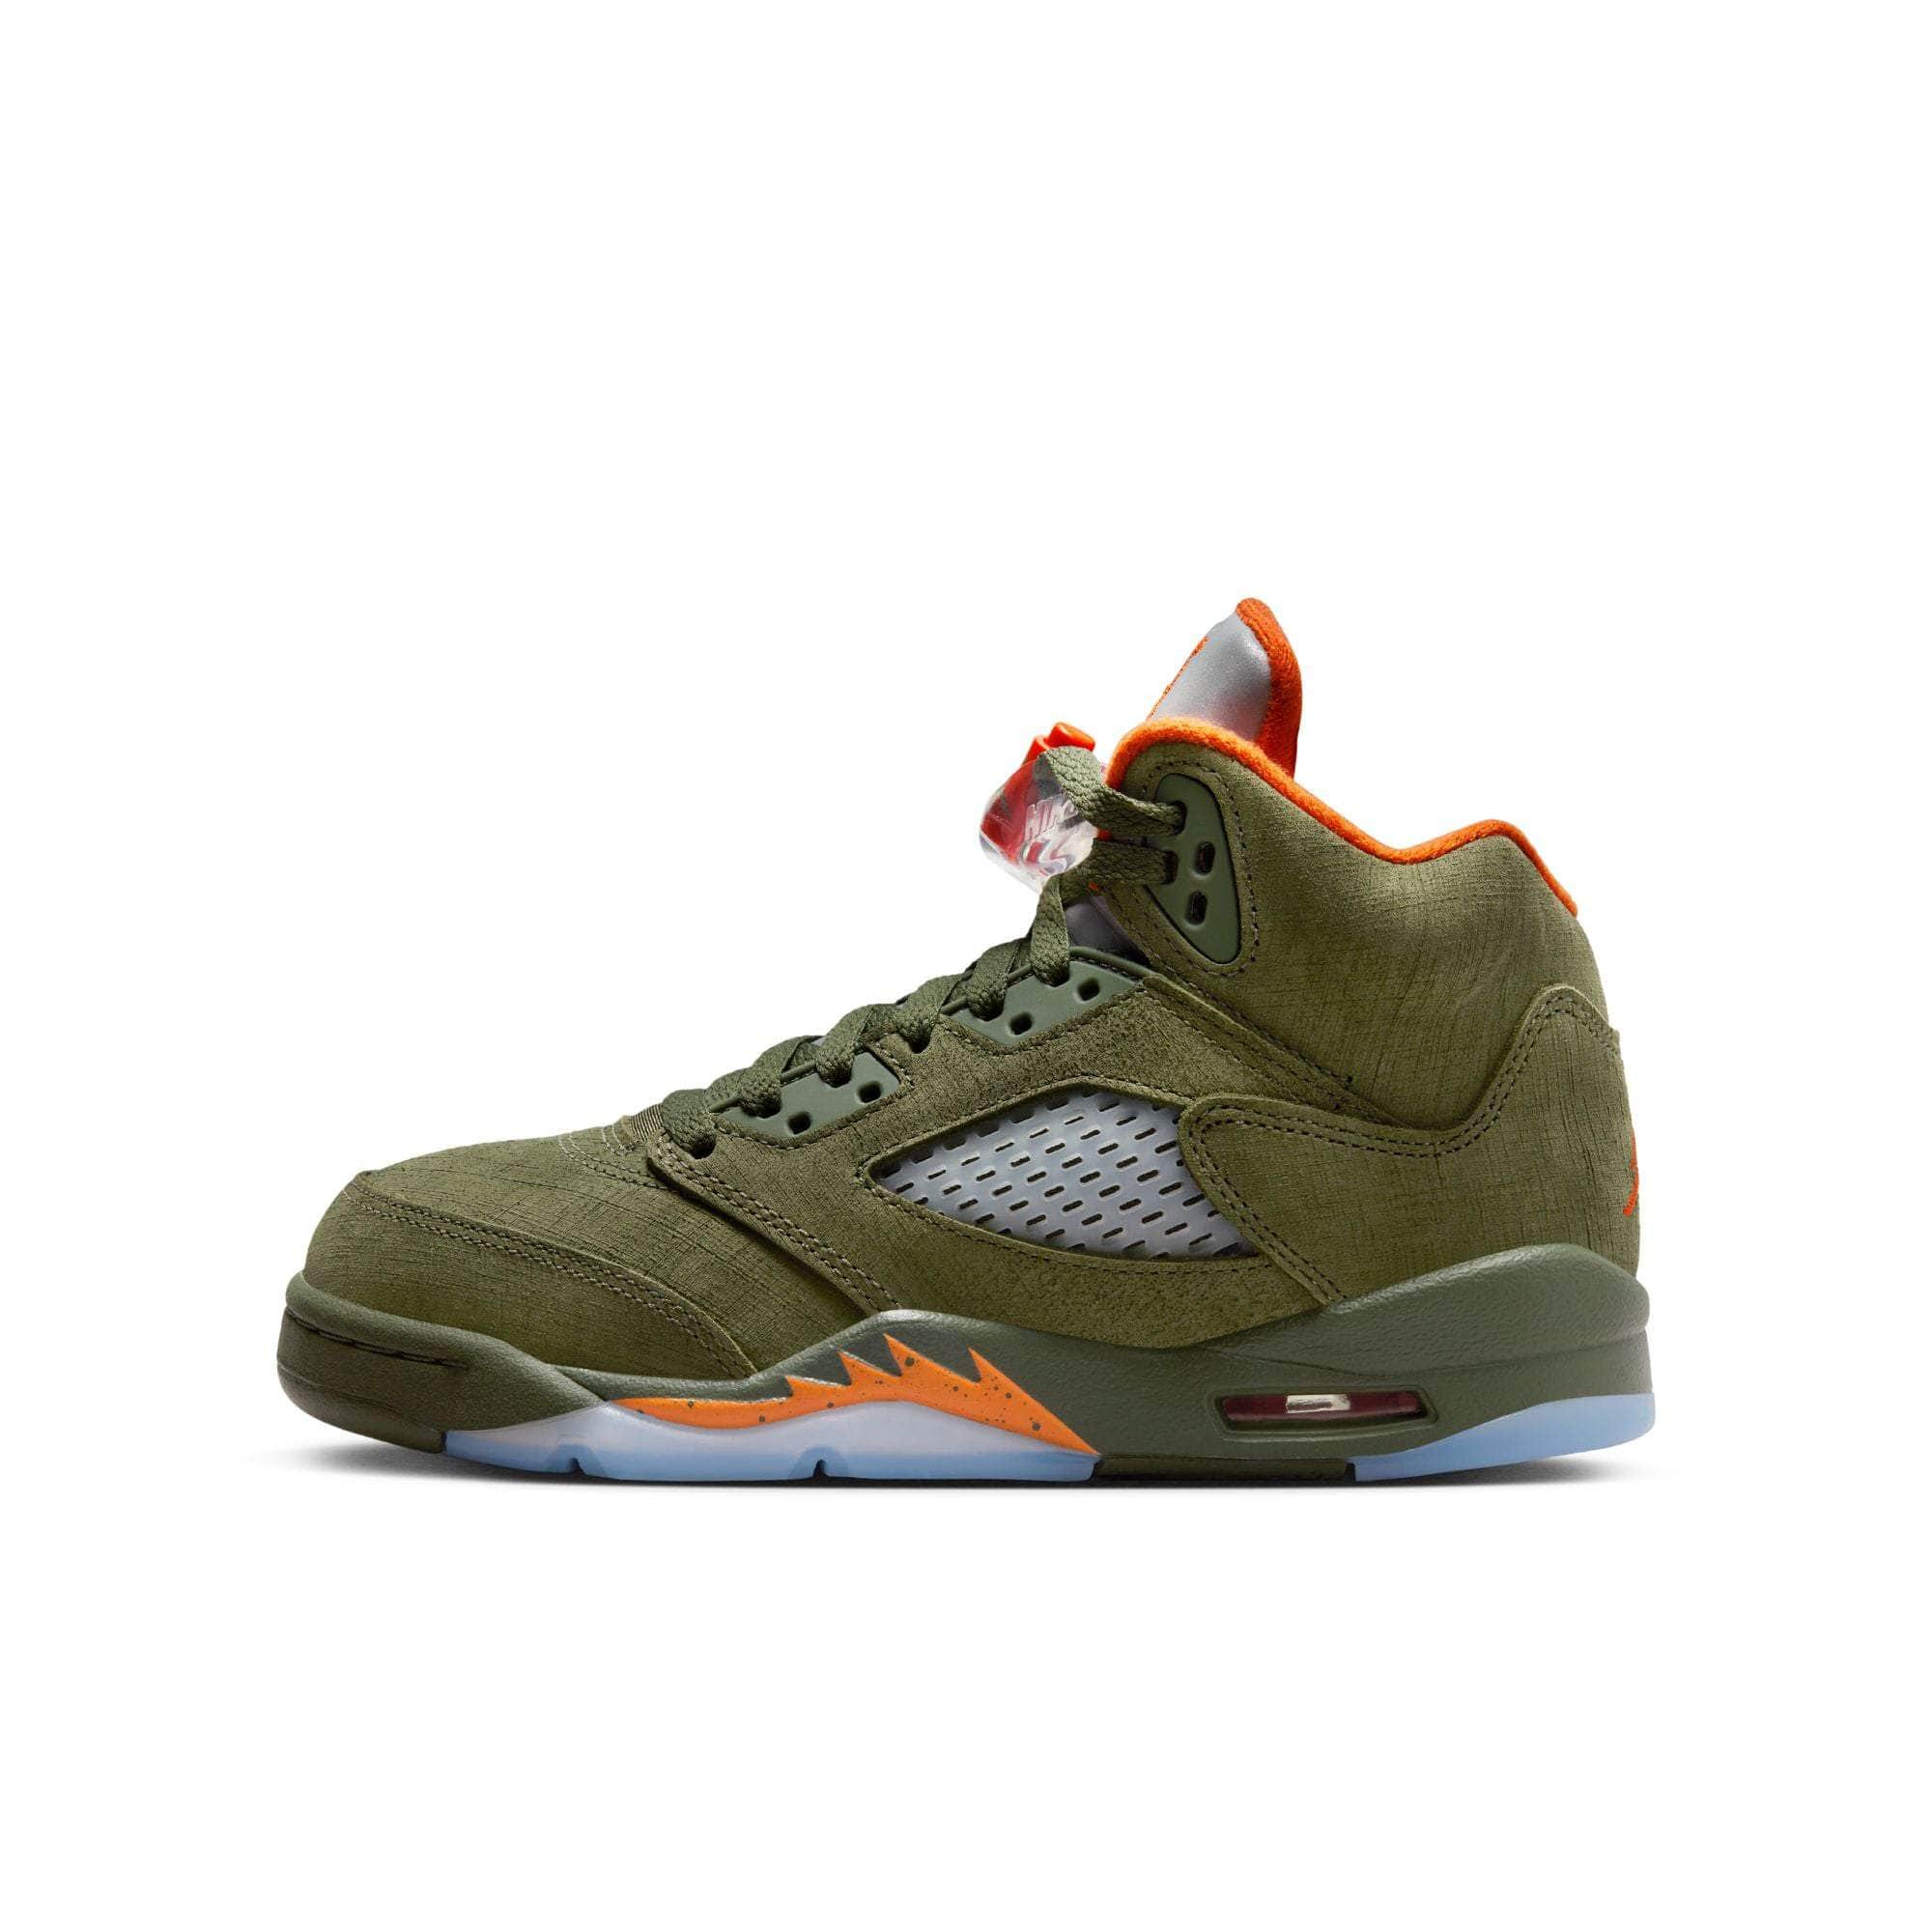 Air Jordan Footwear Air Jordan 5 Retro “Olive“ - Boy's GS